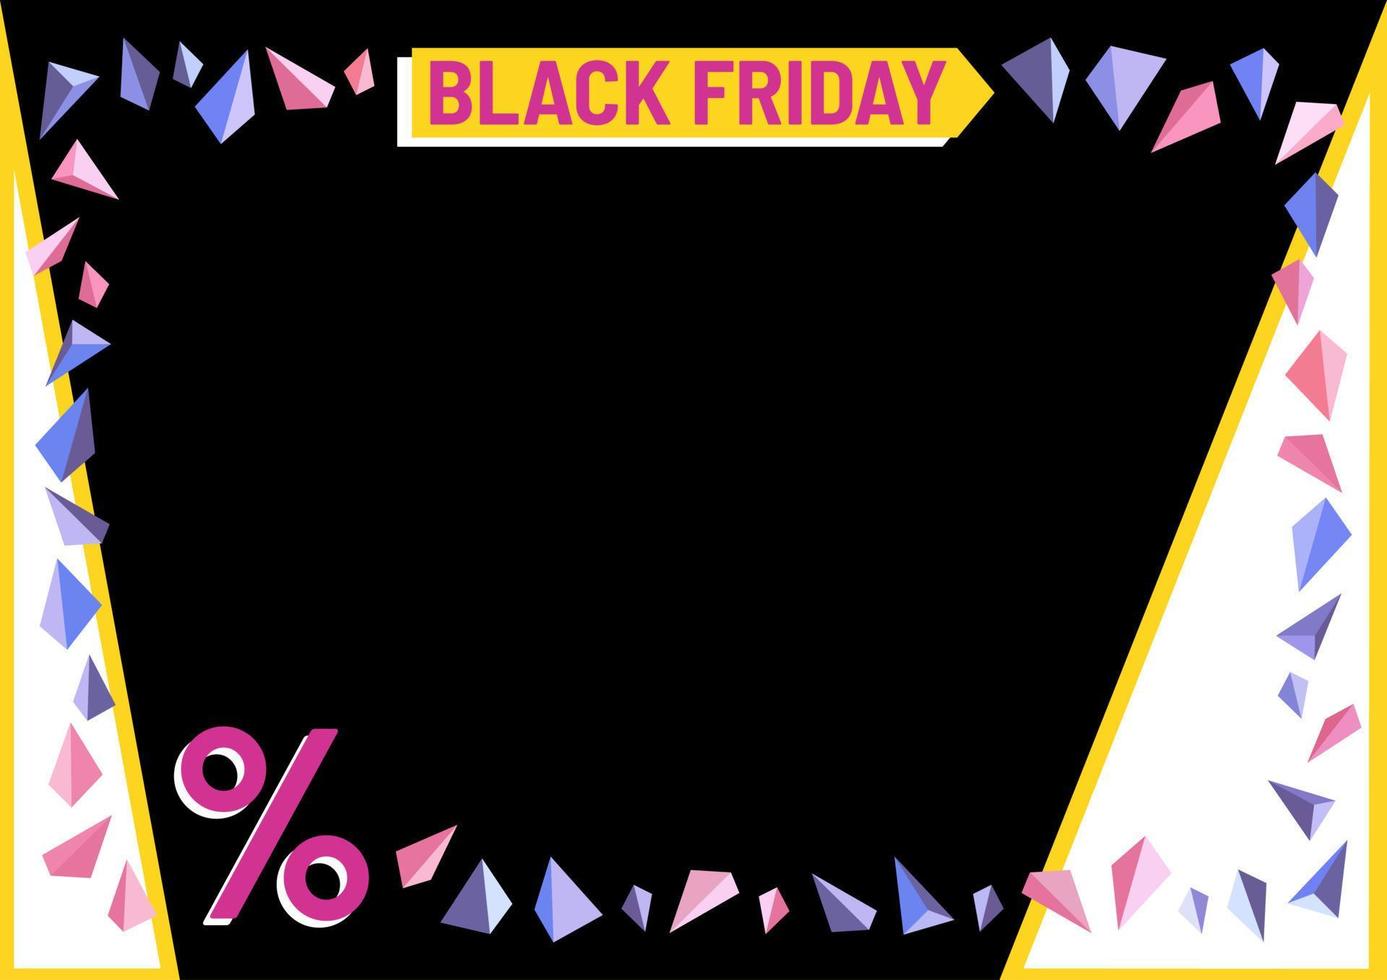 zwart vrijdag spandoek. procenten. korting. na, omslag, reclame voor web. zwart, geel, wit, roze, paars kleuren. kader of grens. driehoeken decoratie. vector